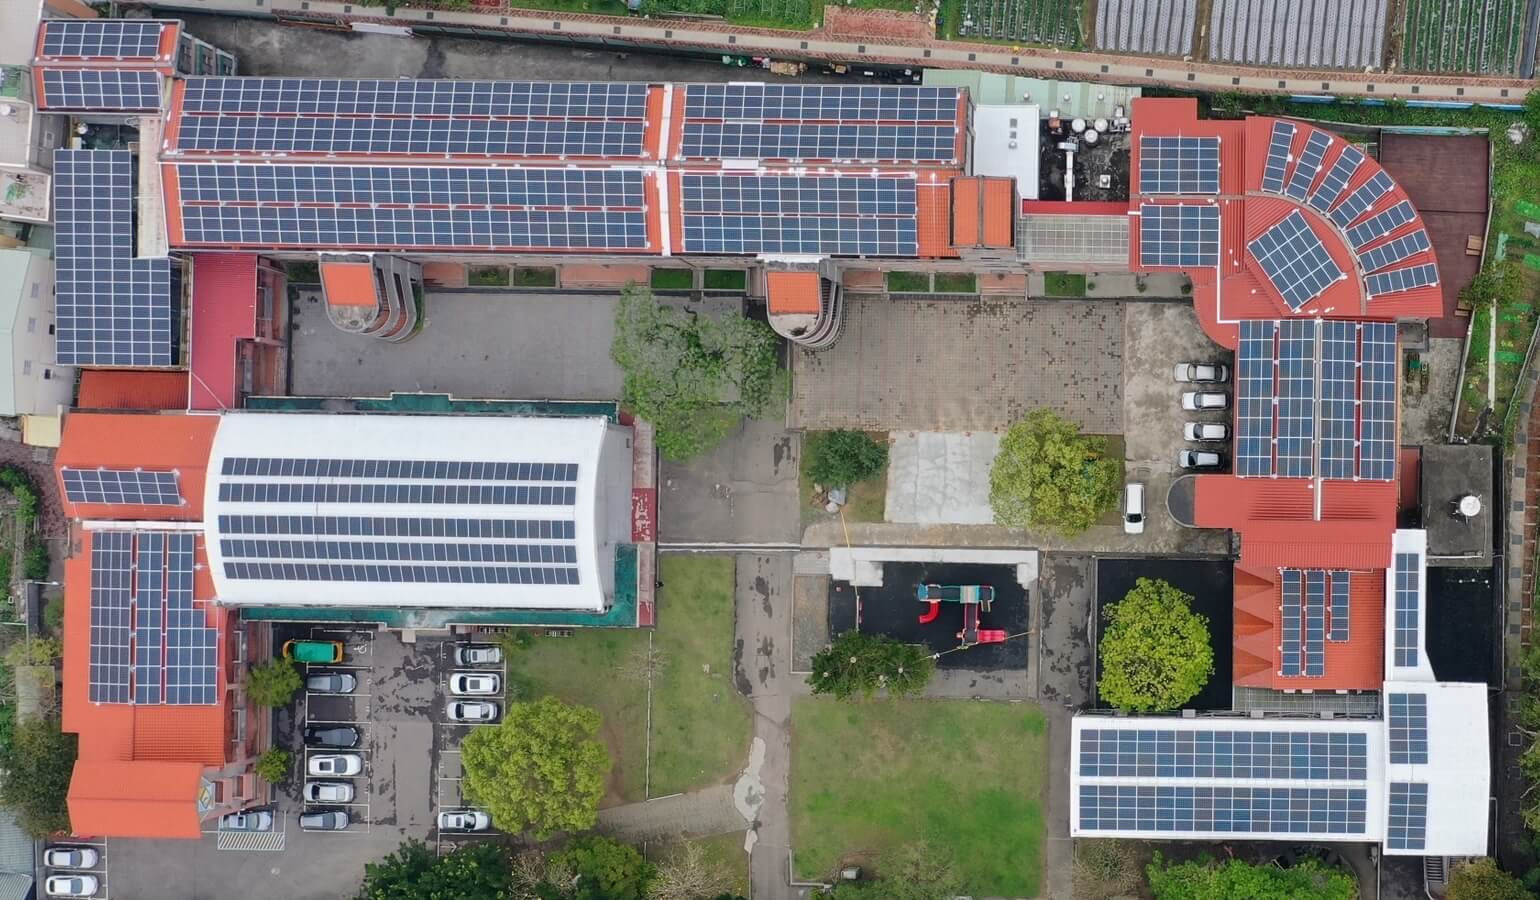 苗栗縣國民小學屋頂型太陽能發電項目